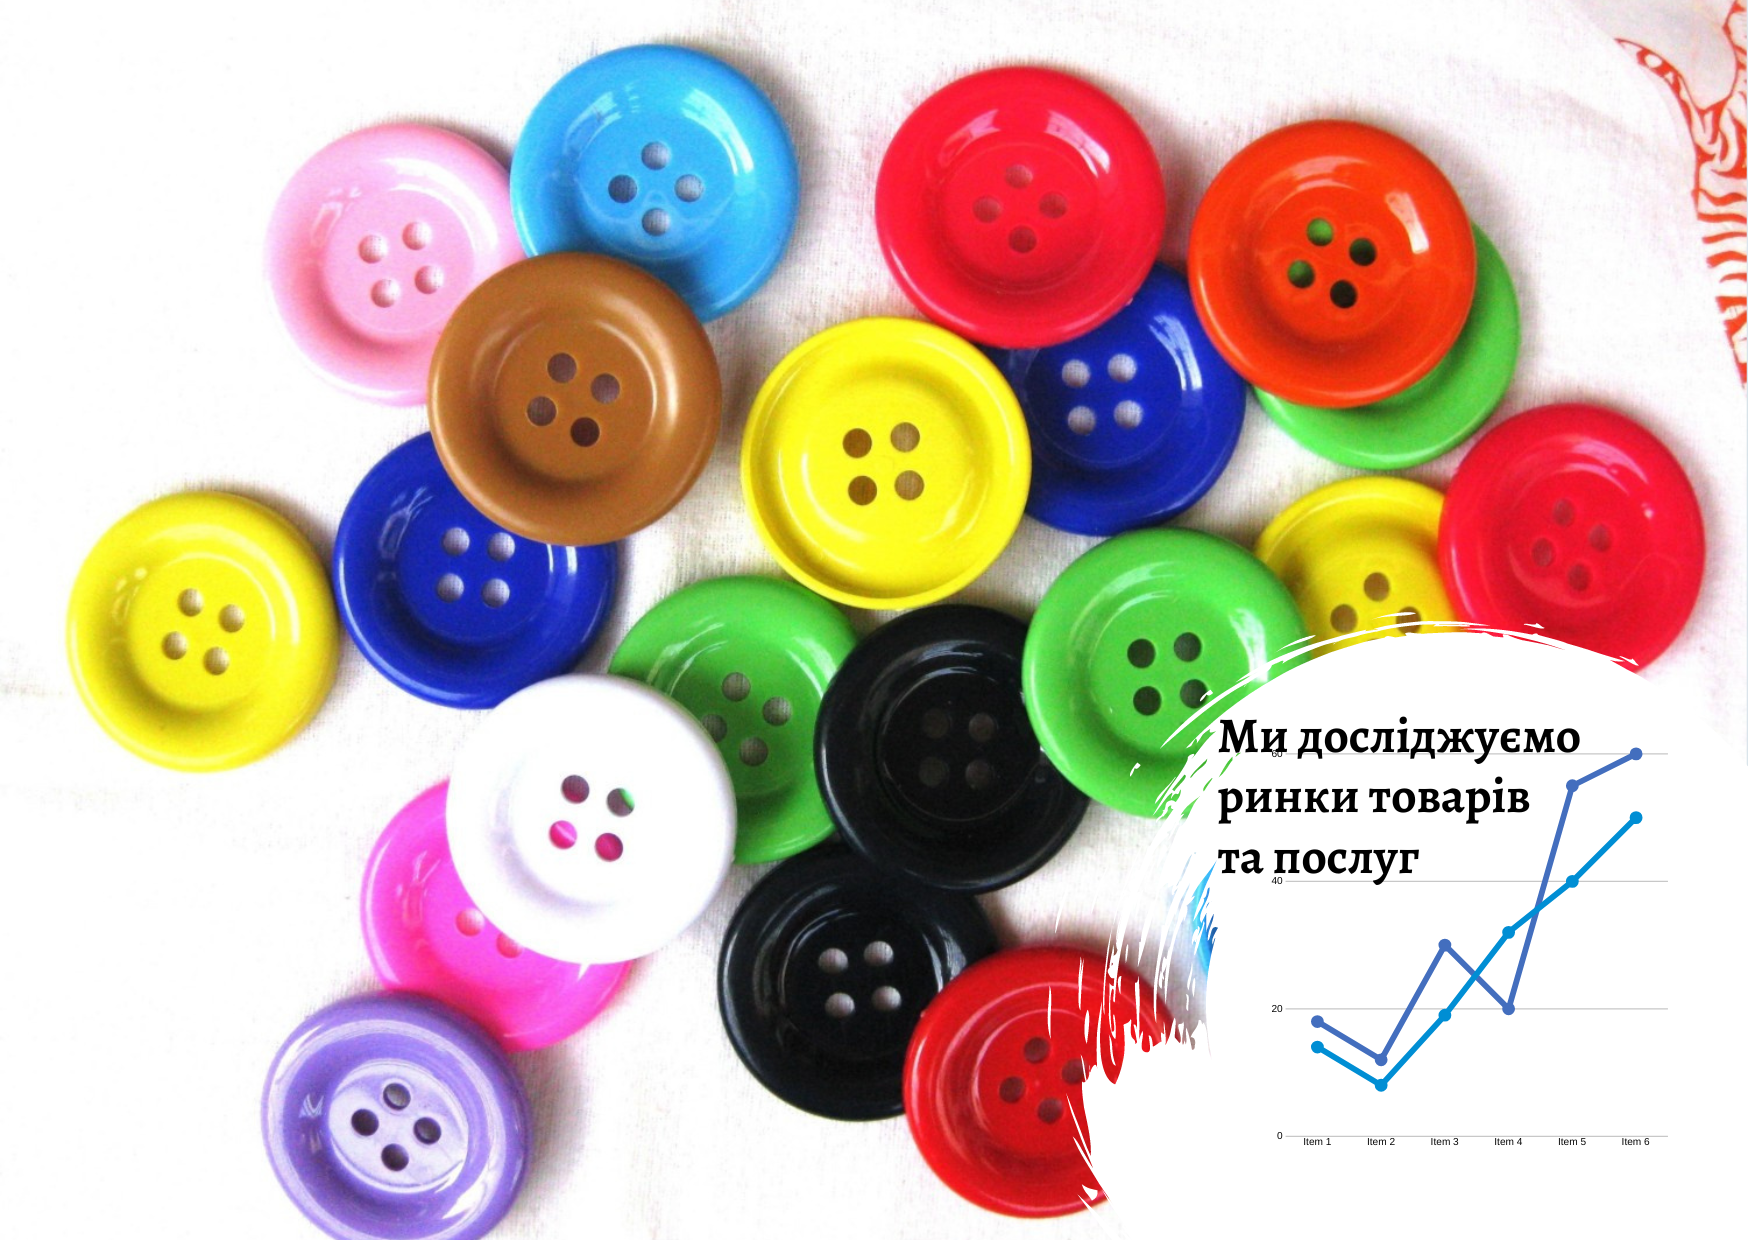 Ukrainian button market 